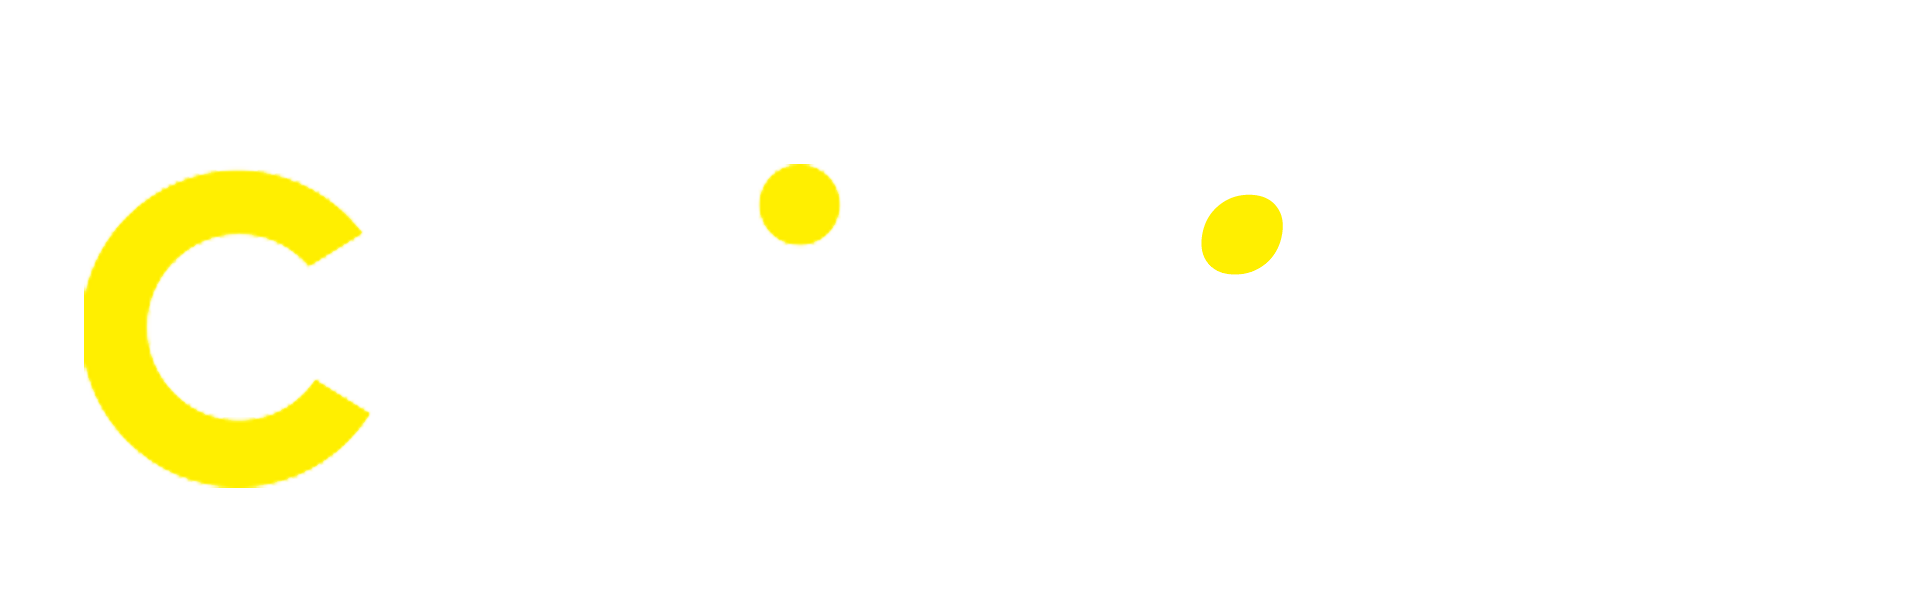 CWIN - cwin.ing